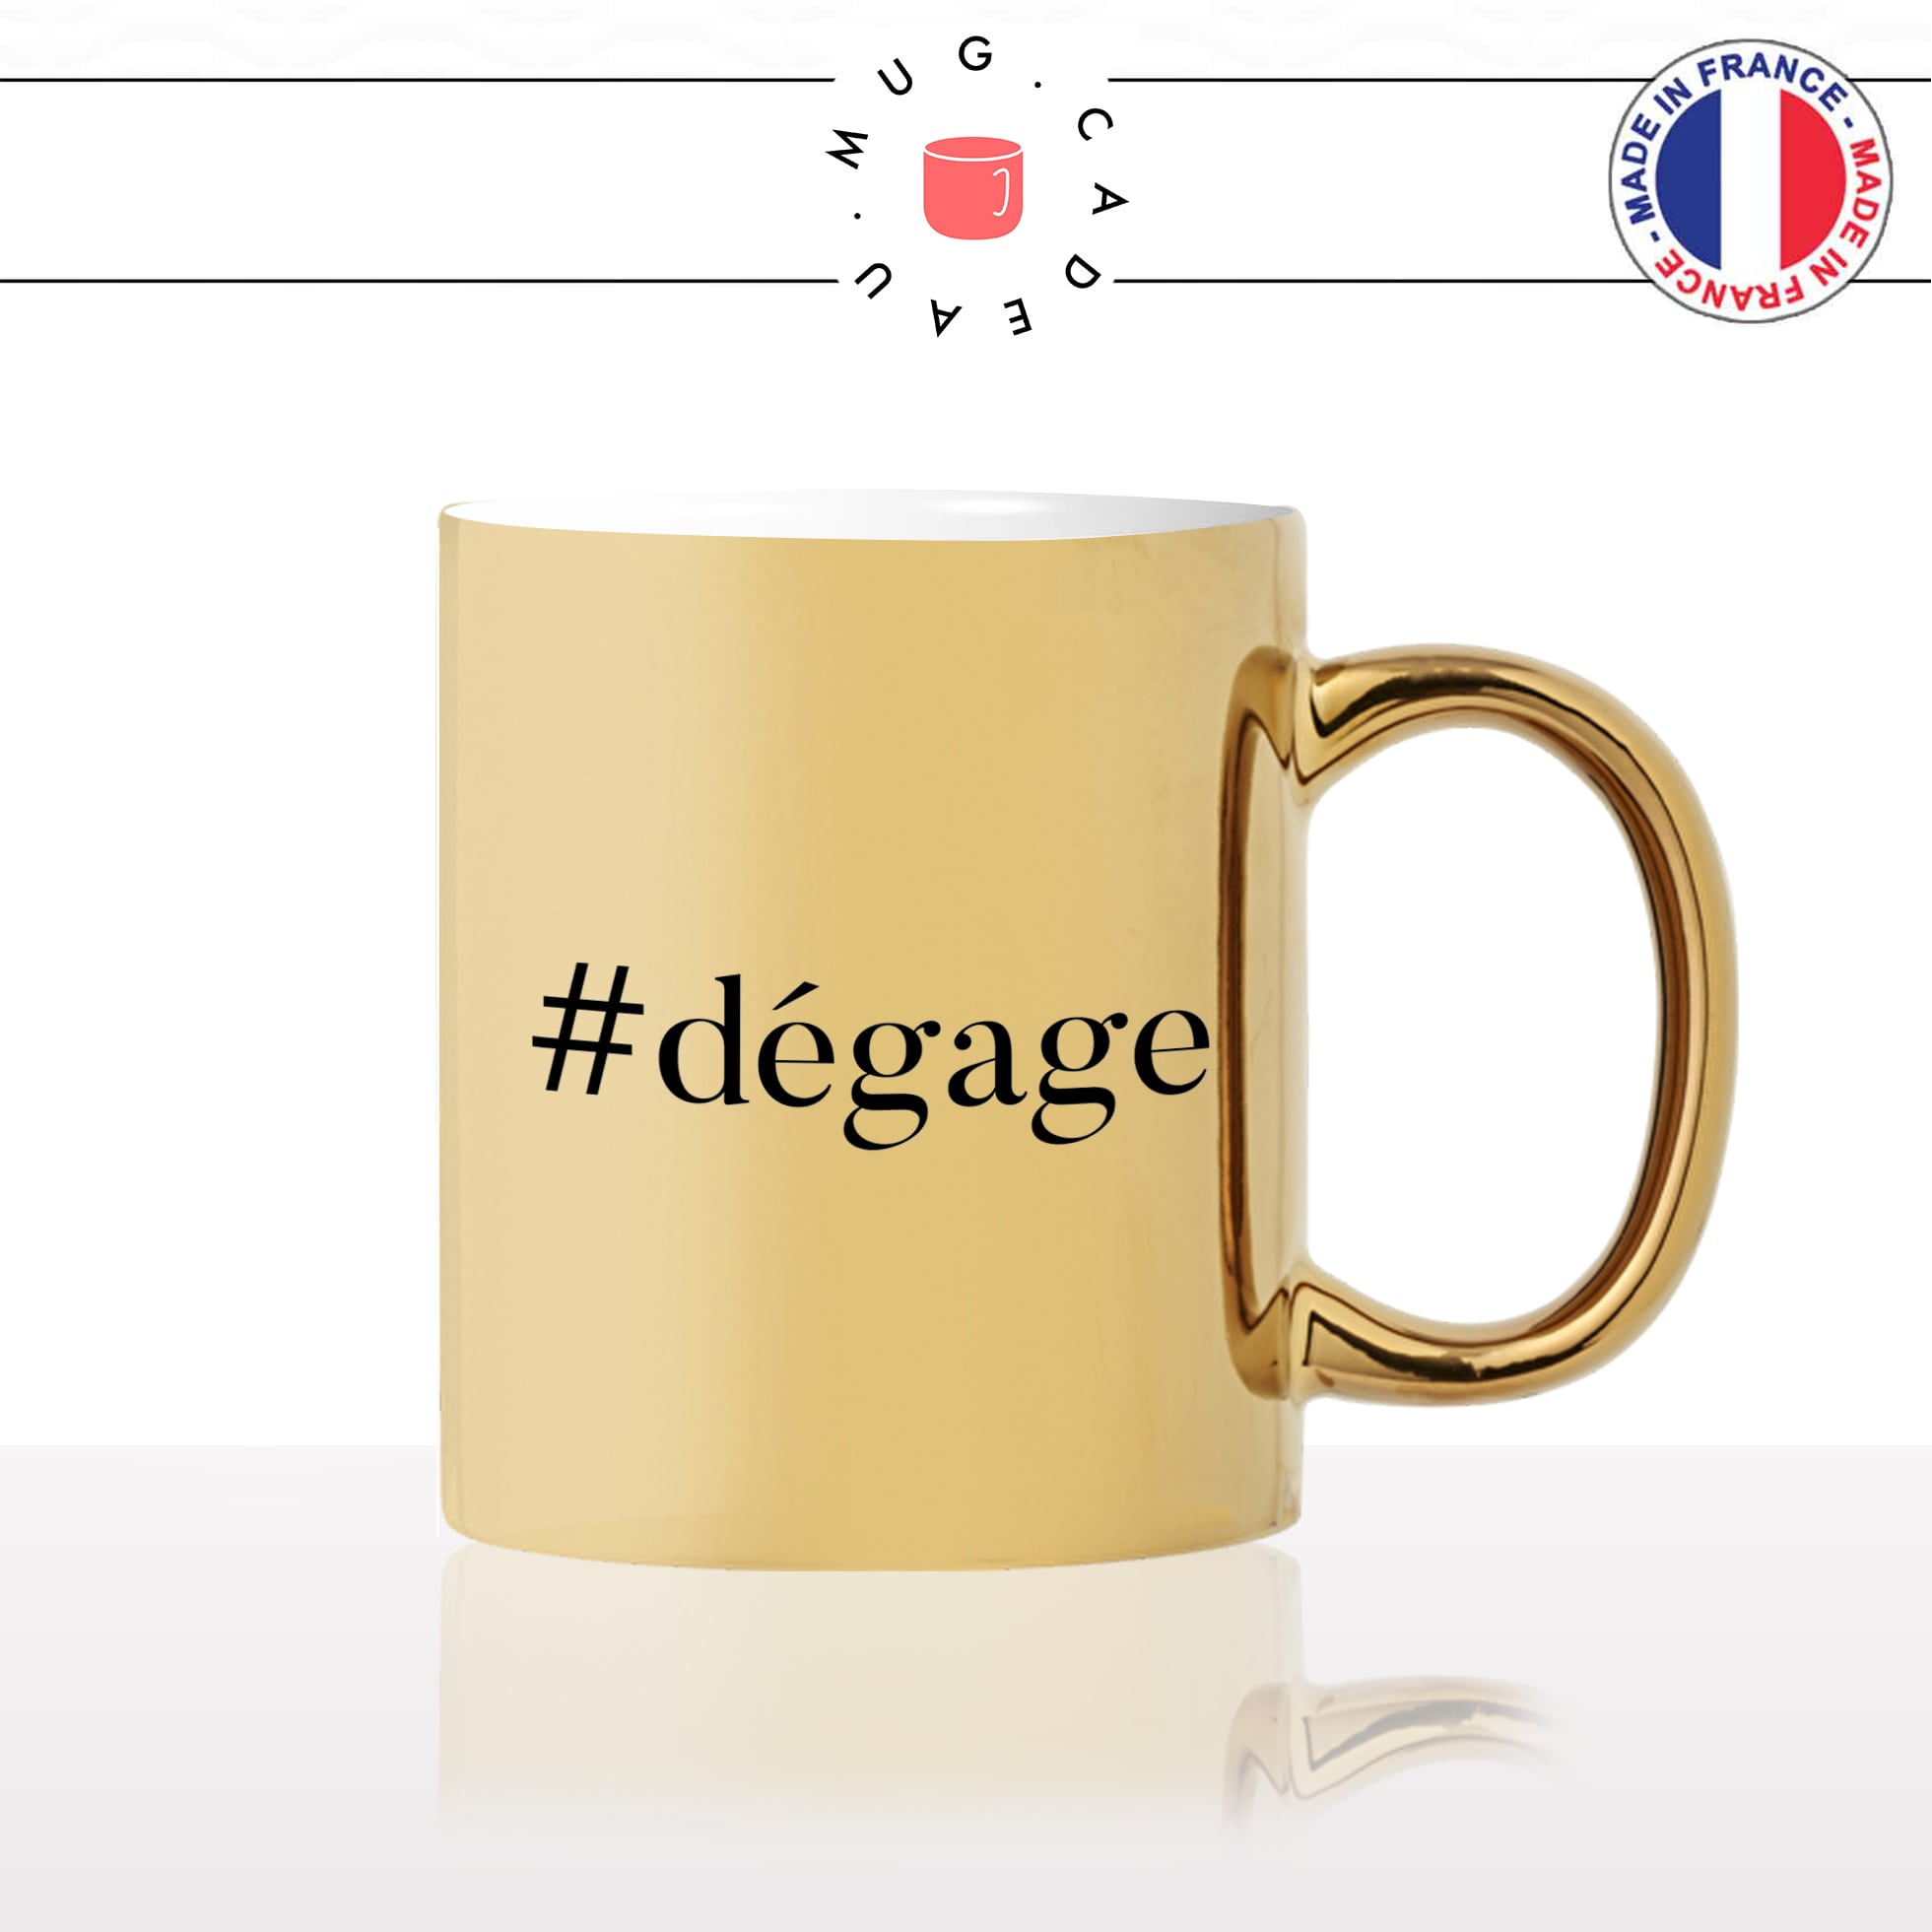 mug-tasse-doré-or-gold-hashtag-dégage-femme-homme-bureau-travail-collegue-anti-social-cool-humour-fun-idée-cadeau-personnalisé-café-thé2-min